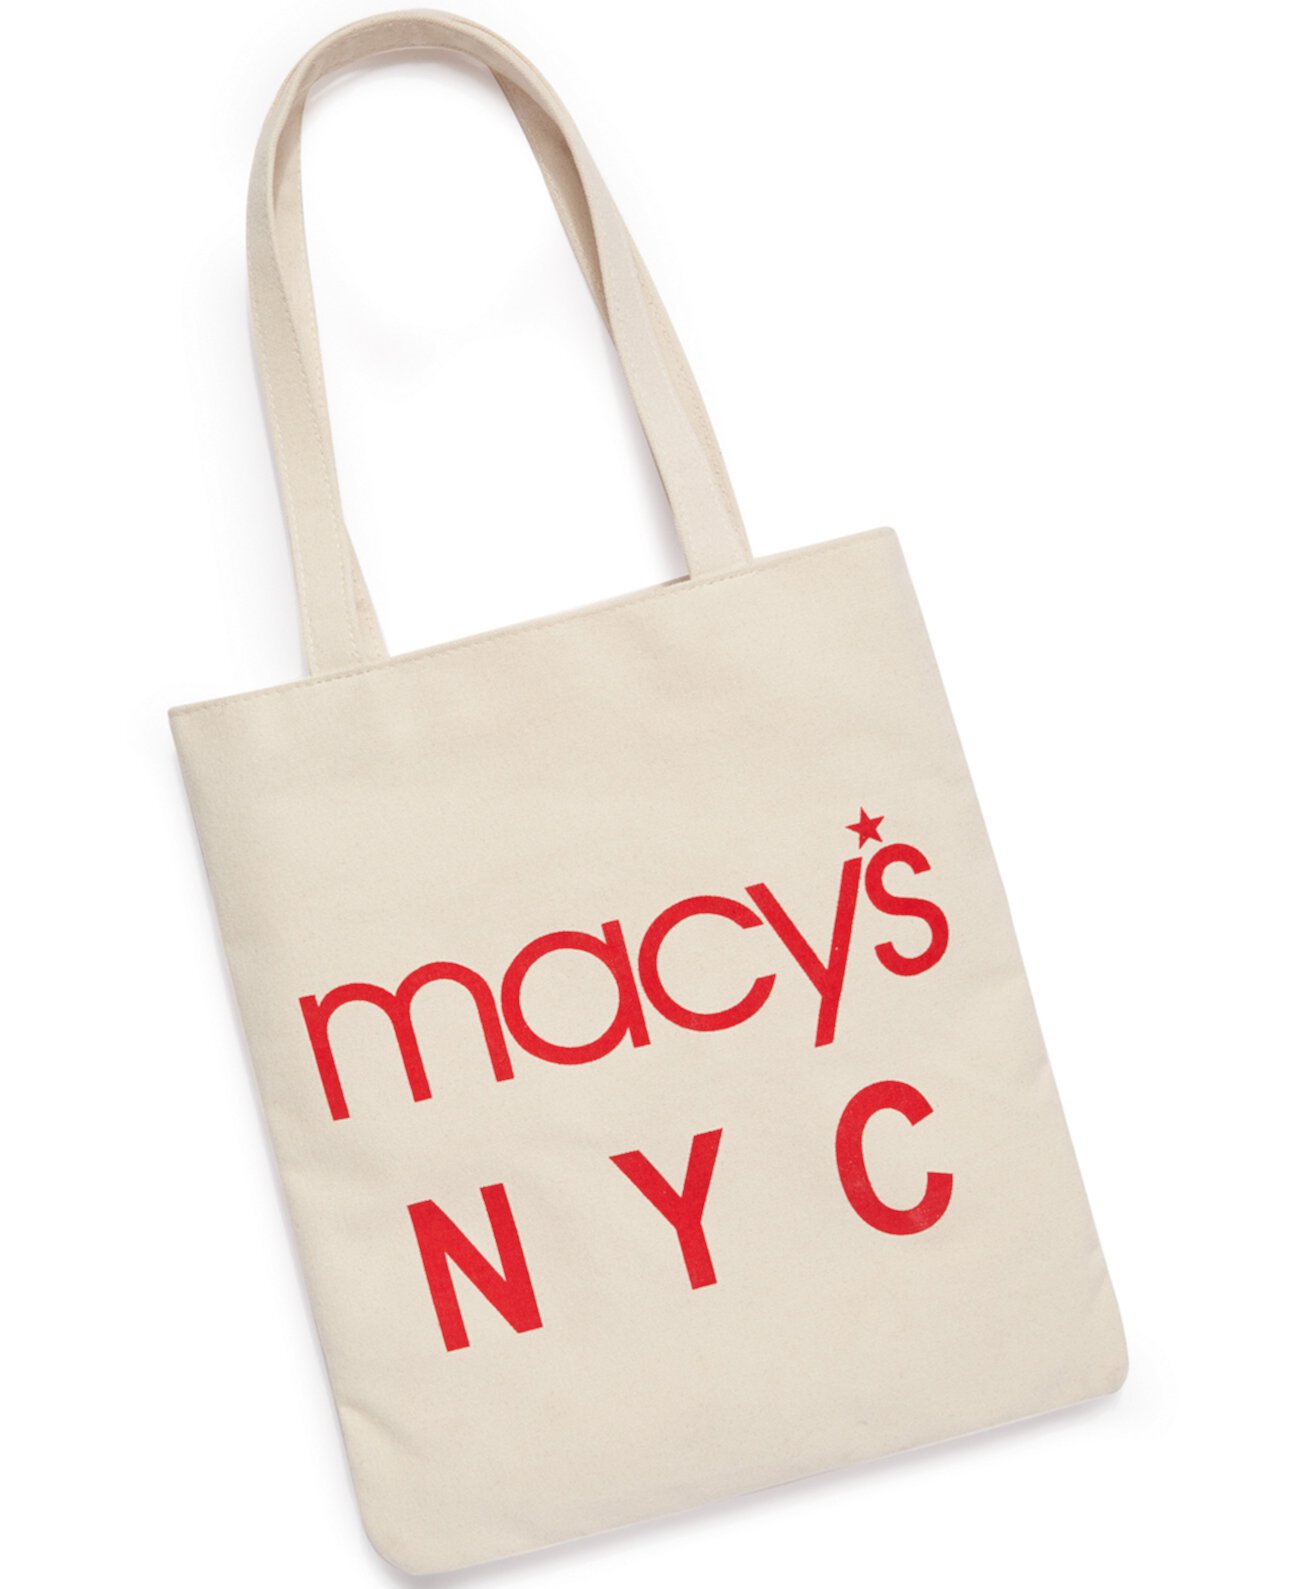 Macy's Самый большой в мире магазин Canvas Tote, созданный для Macy's Dani Accessories